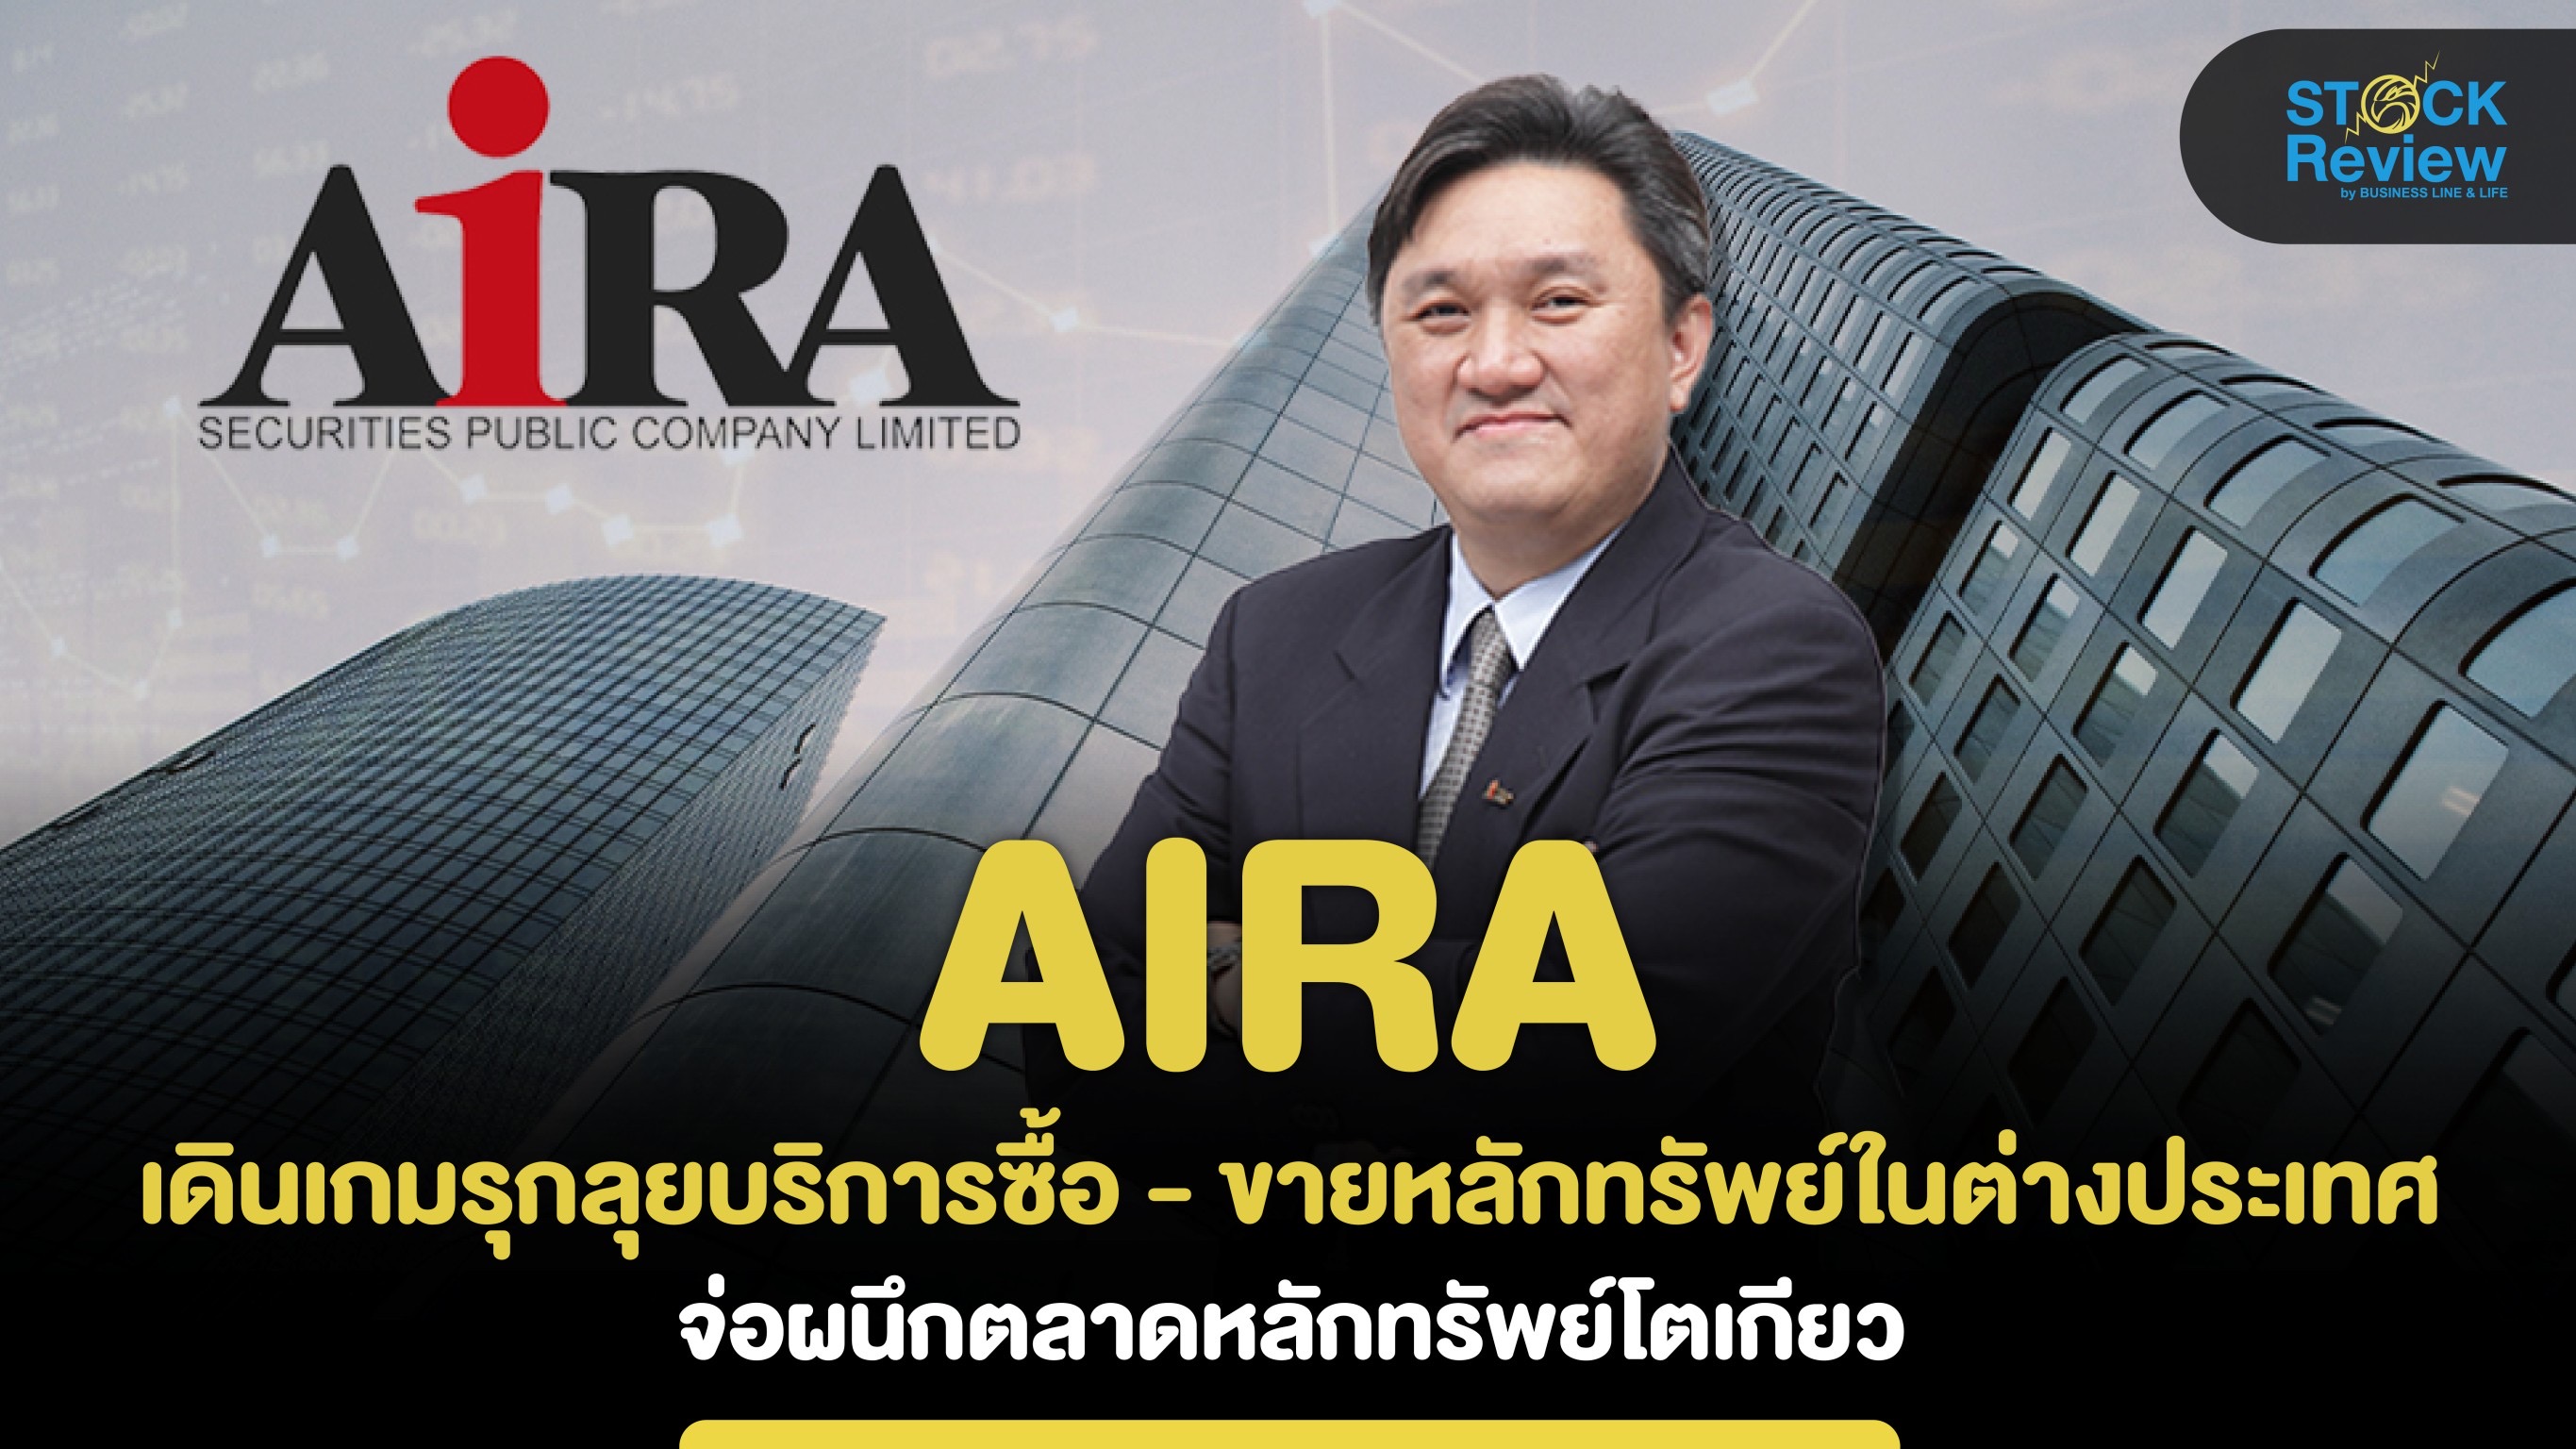 Aira เดินเกมรุกลุยบริการซื้อ - ขายหลักทรัพย์ในต่างประเทศจ่อผนึกตลาดหุ้นโตเกียว